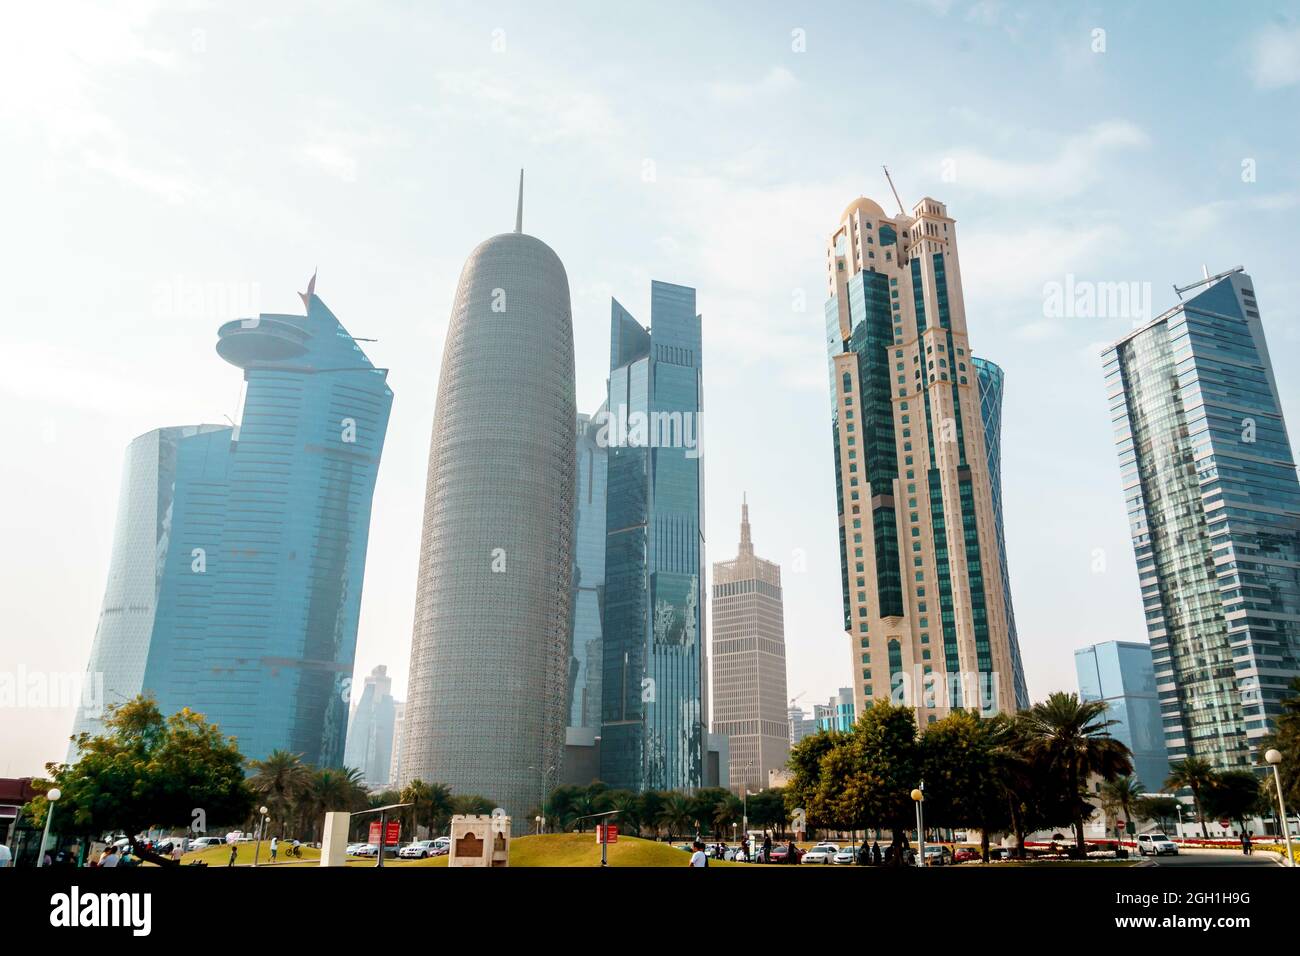 DOHA, QATAR - 01 mars 2019 : une belle vue de la ville avec des gratte-ciels au Qatar, Doha Banque D'Images